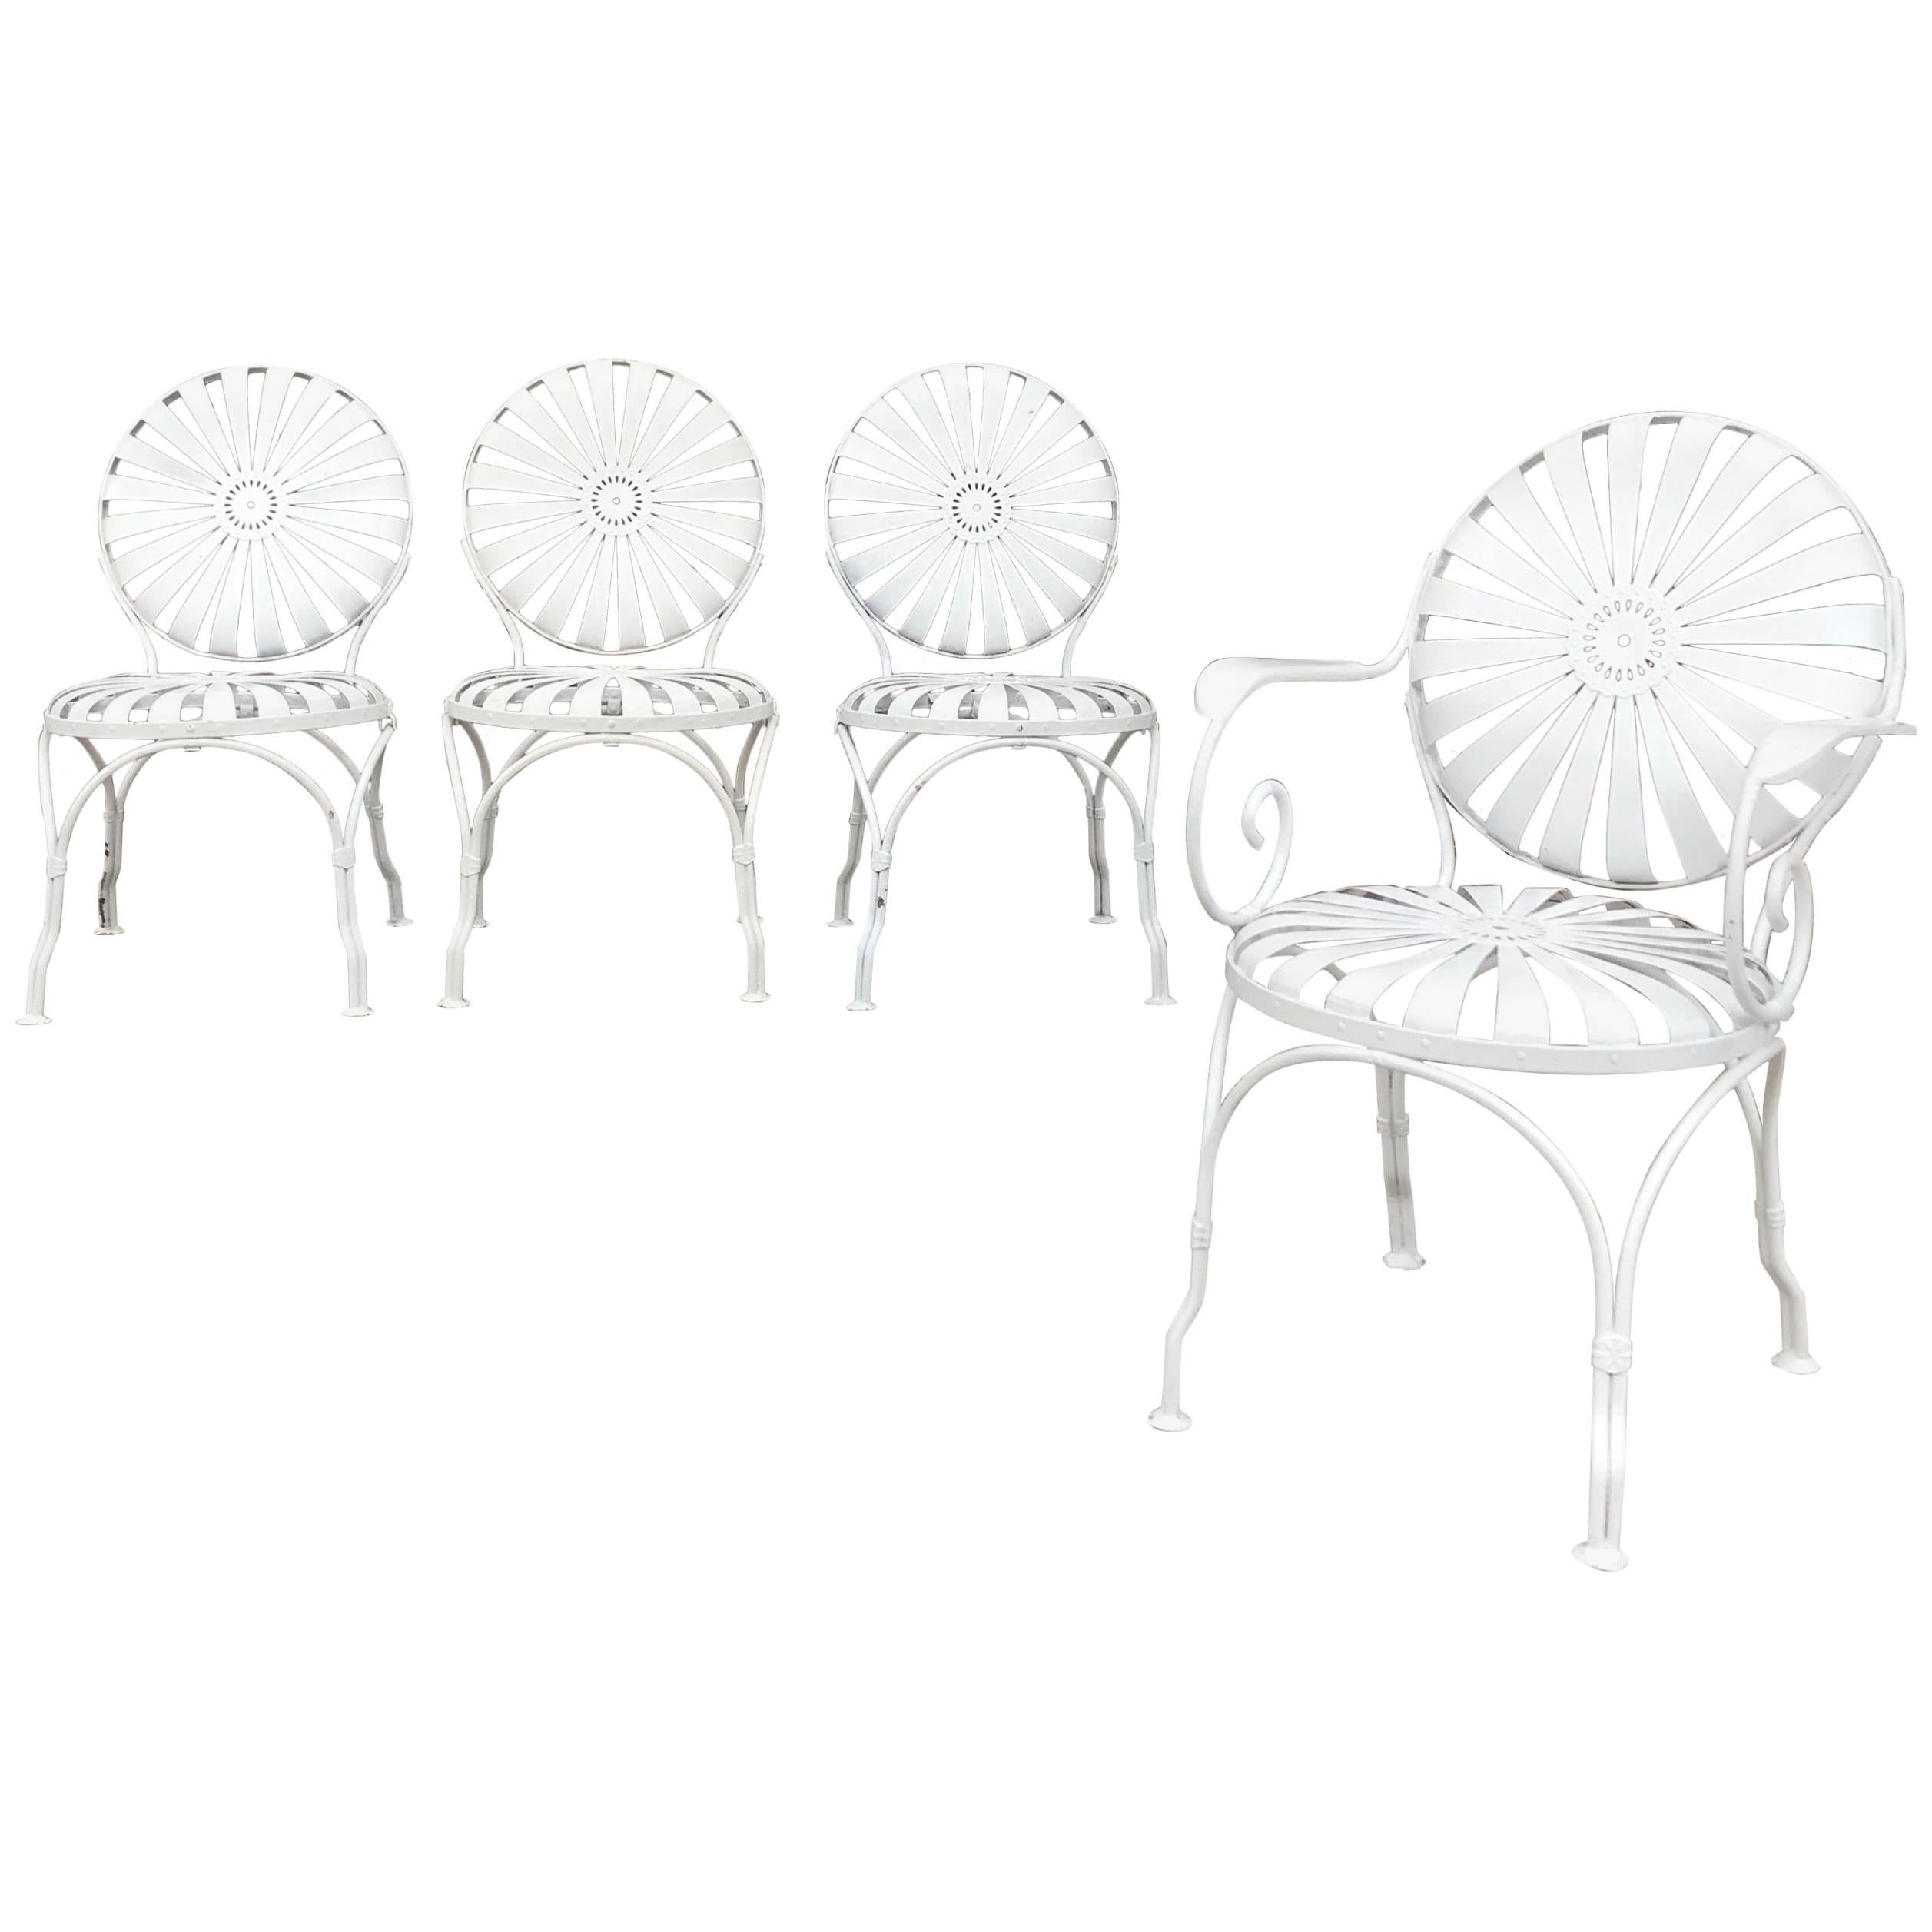 Art Deco Francois Carré Wrought Iron Sunburst Outdoor Patio Chair Set